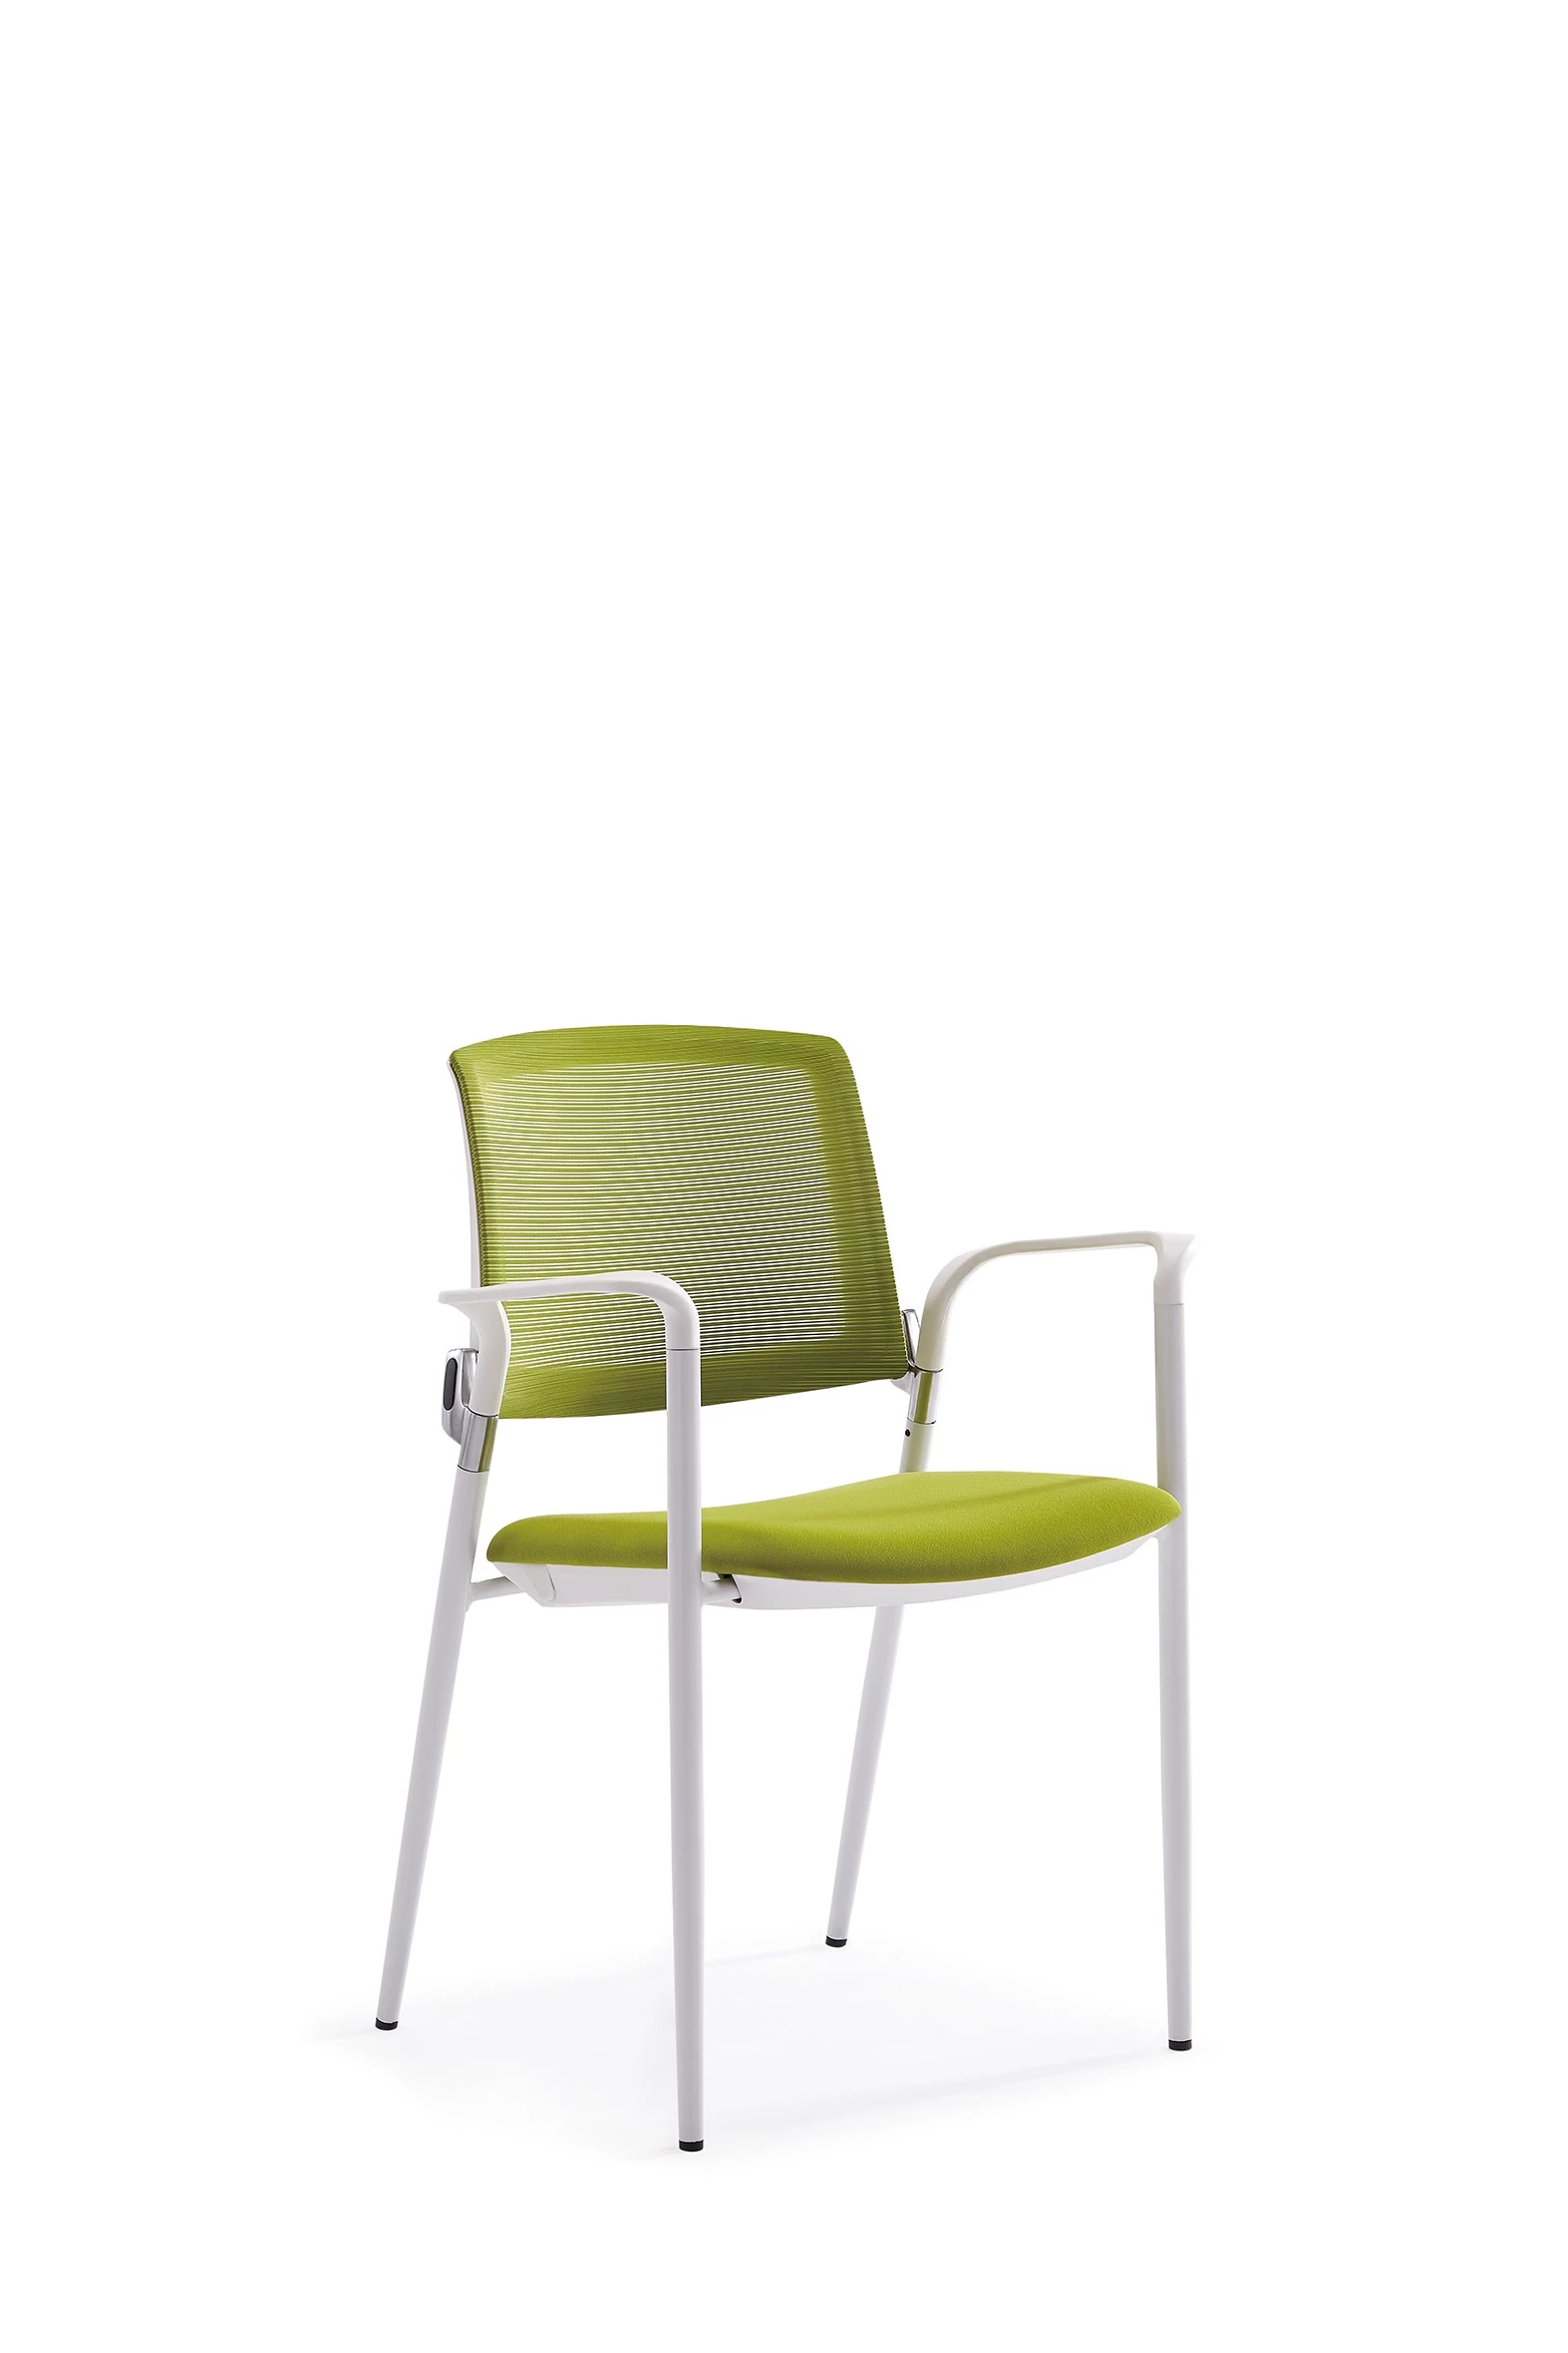 الصين Newcity 1534 الحديثة التراص شبكة مؤتمر التدريب كرسي حديقة الأثاث التدريب كرسي الأزياء الحديثة التدريب كرسي جودة عالية الجملة في الهواء الطلق الكرسي المورد الصينية فوشان الصينية الصانع